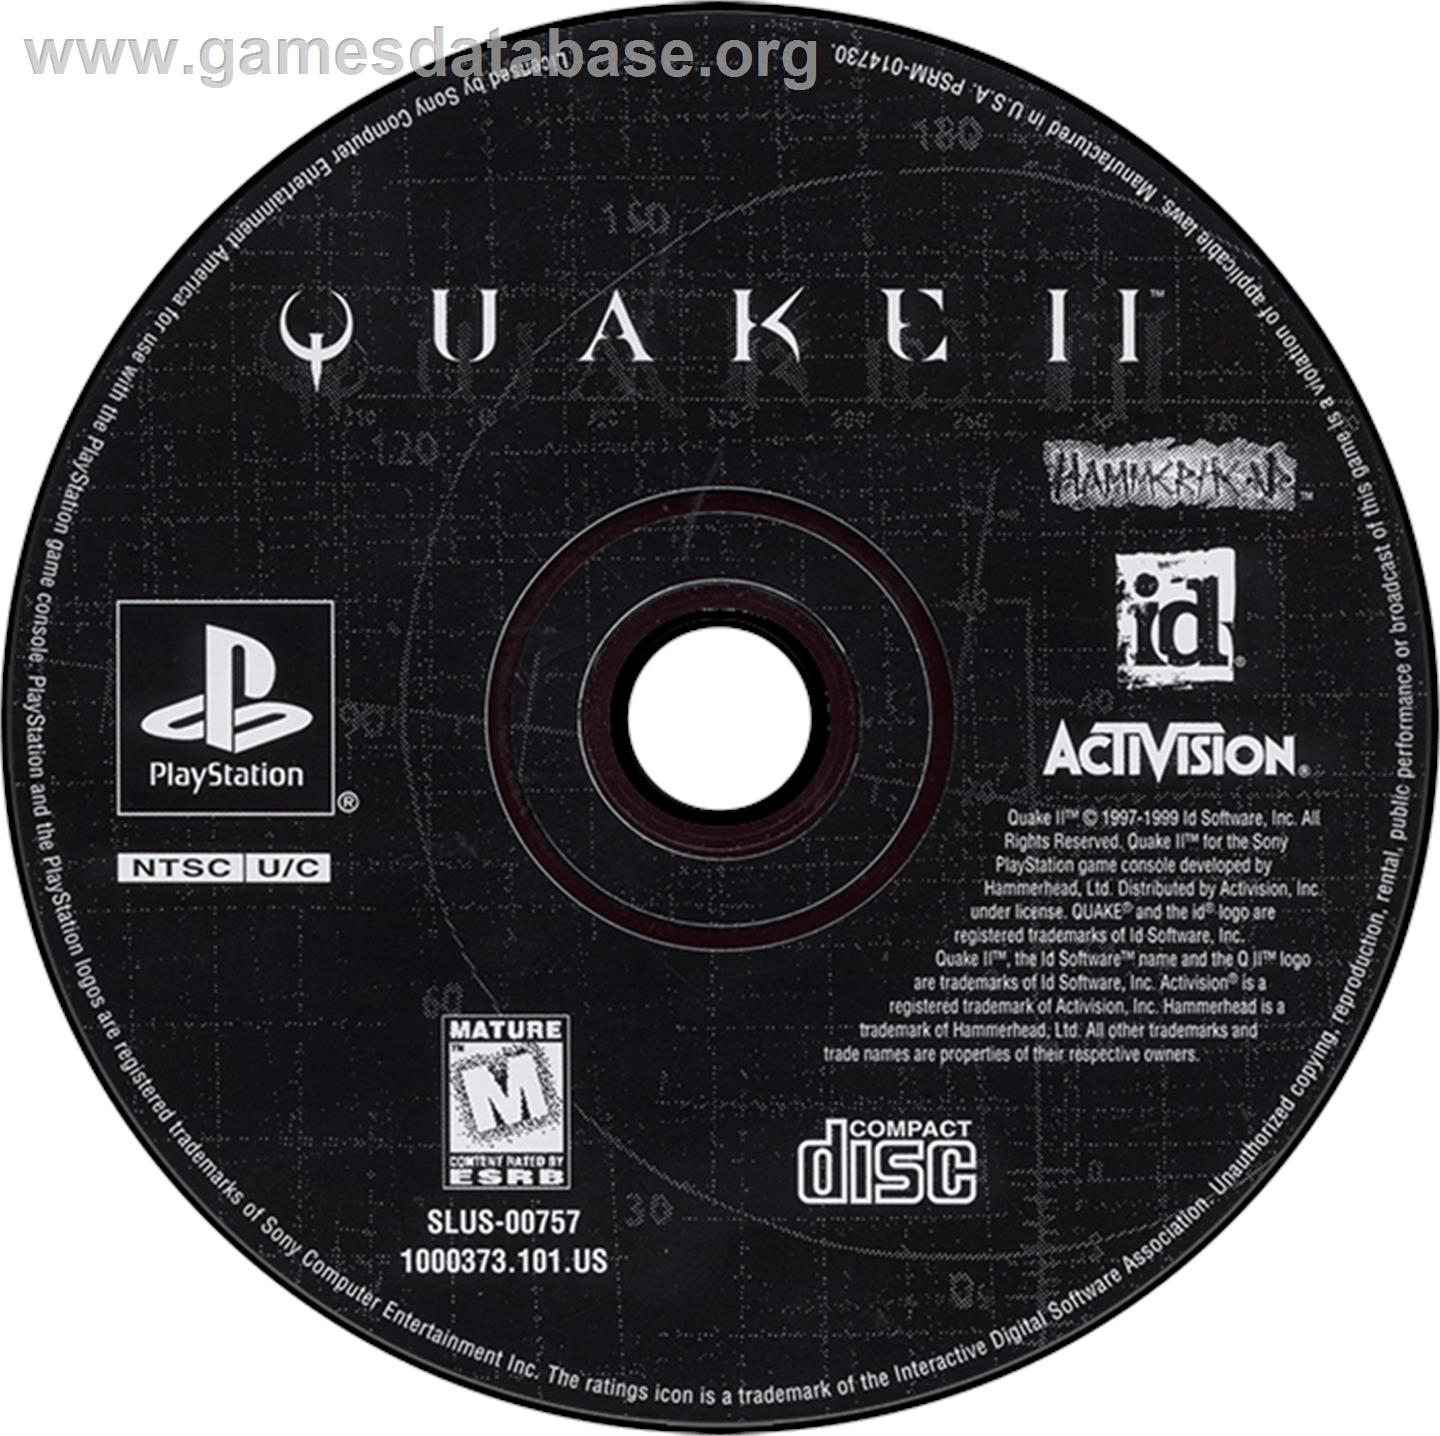 Quake II - Sony Playstation - Artwork - Disc